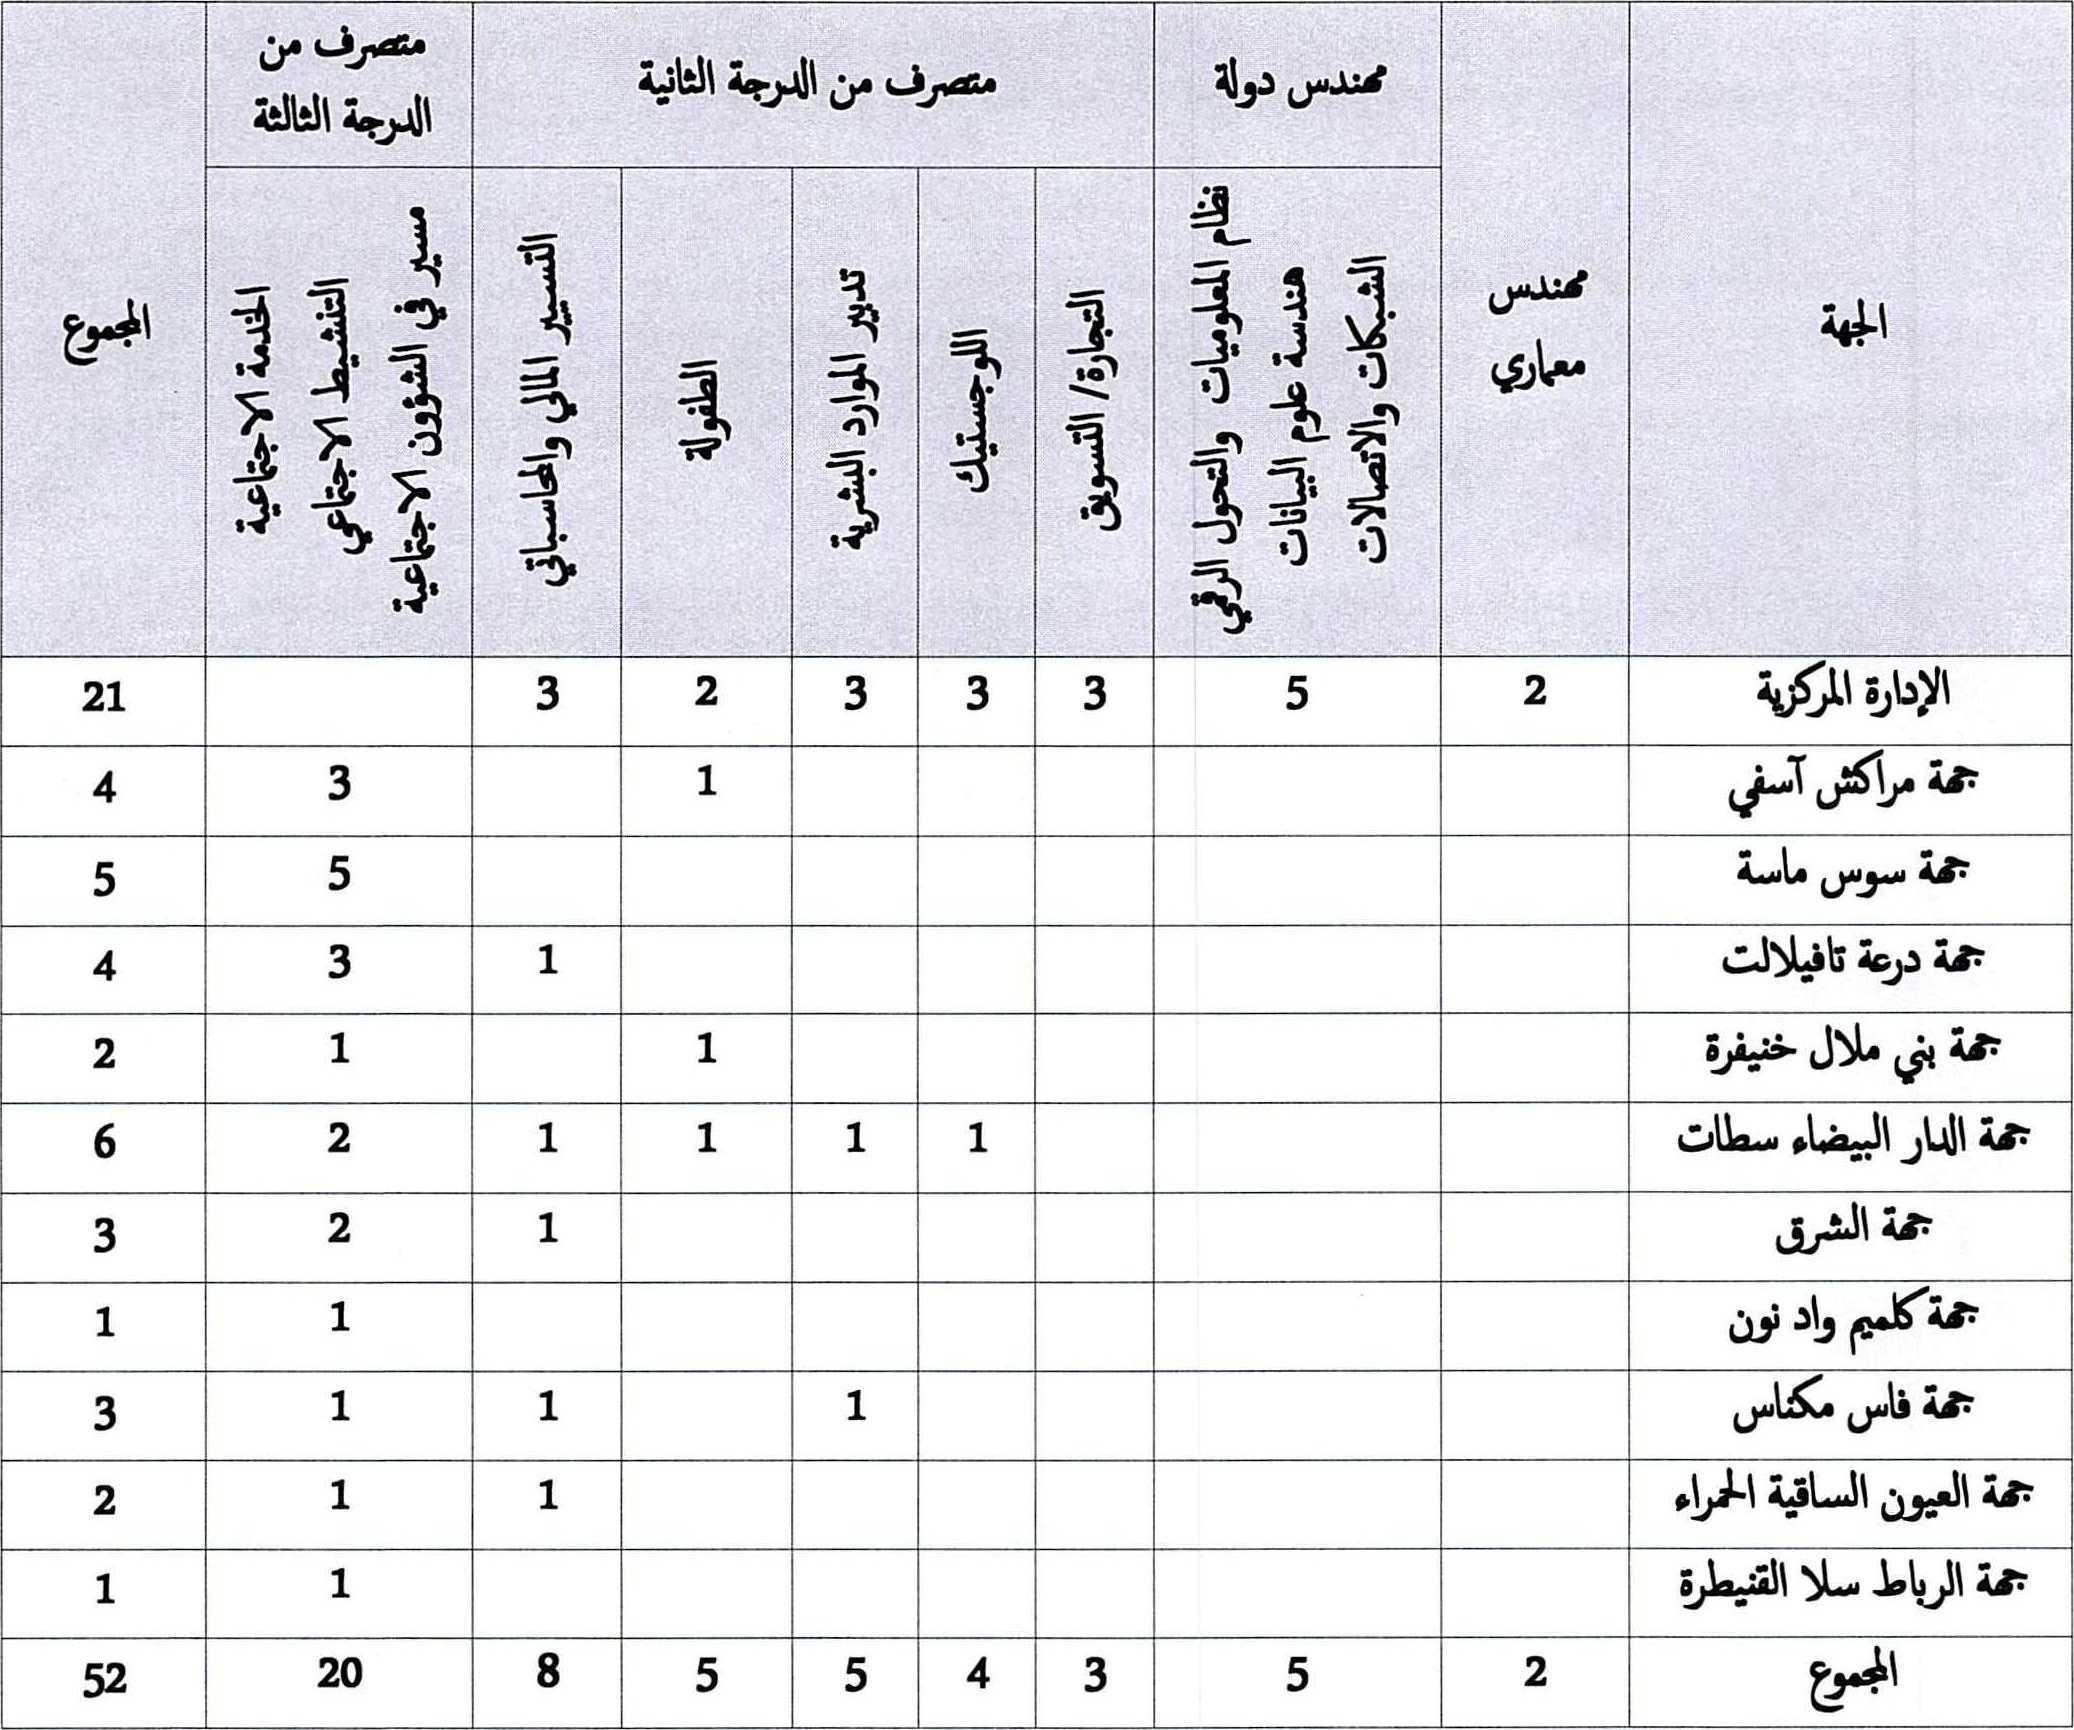 جدول توزيع المناصب حسب الدرجات والجهات